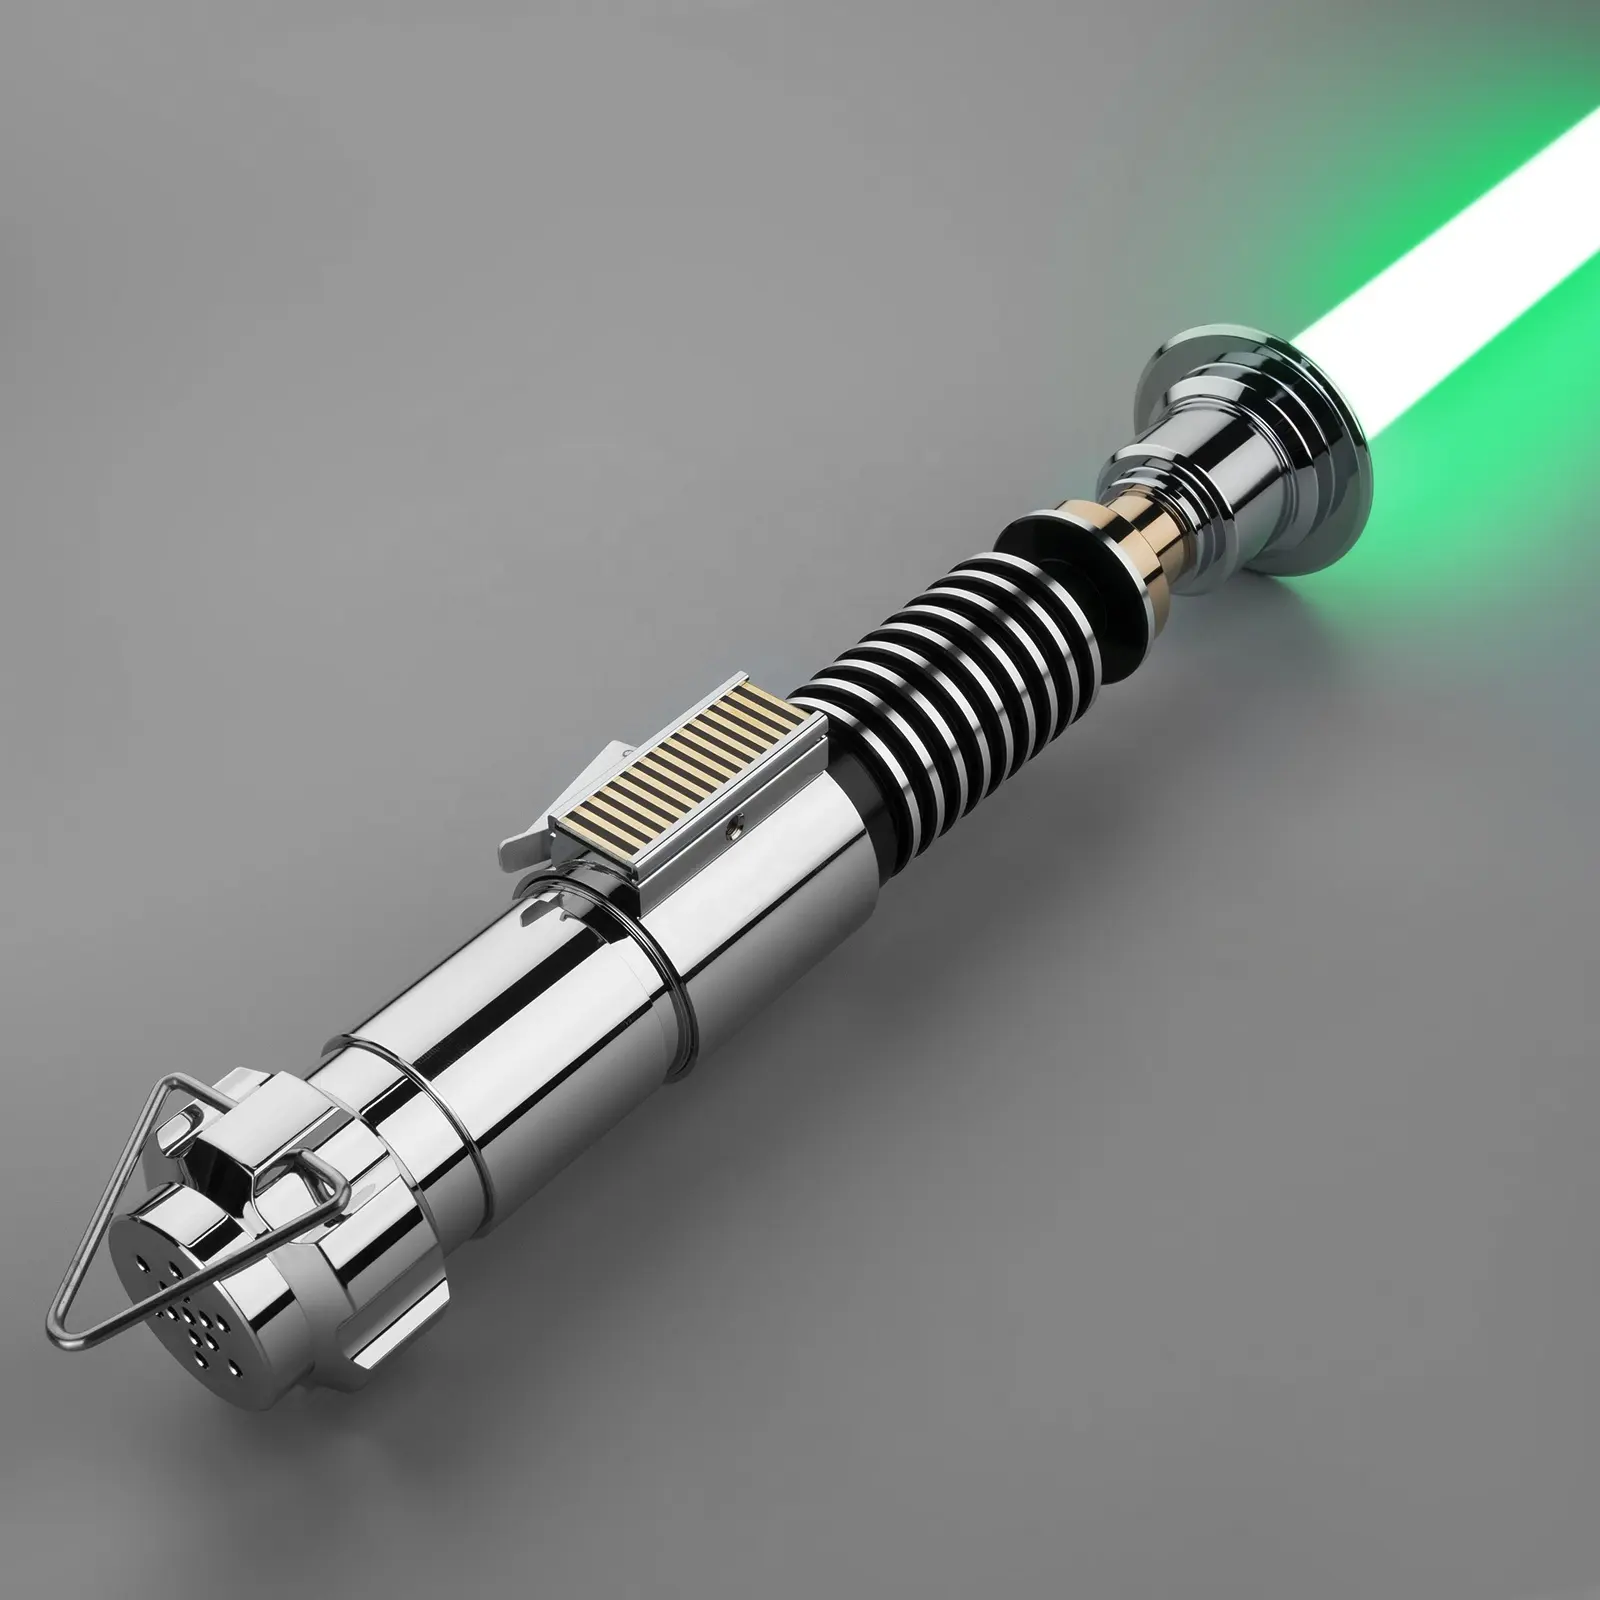 LGT Saberstudio Luke Skywalker lightsaber infinite color change smooth swing metal hilt katana sword LED light up toys for Jedi